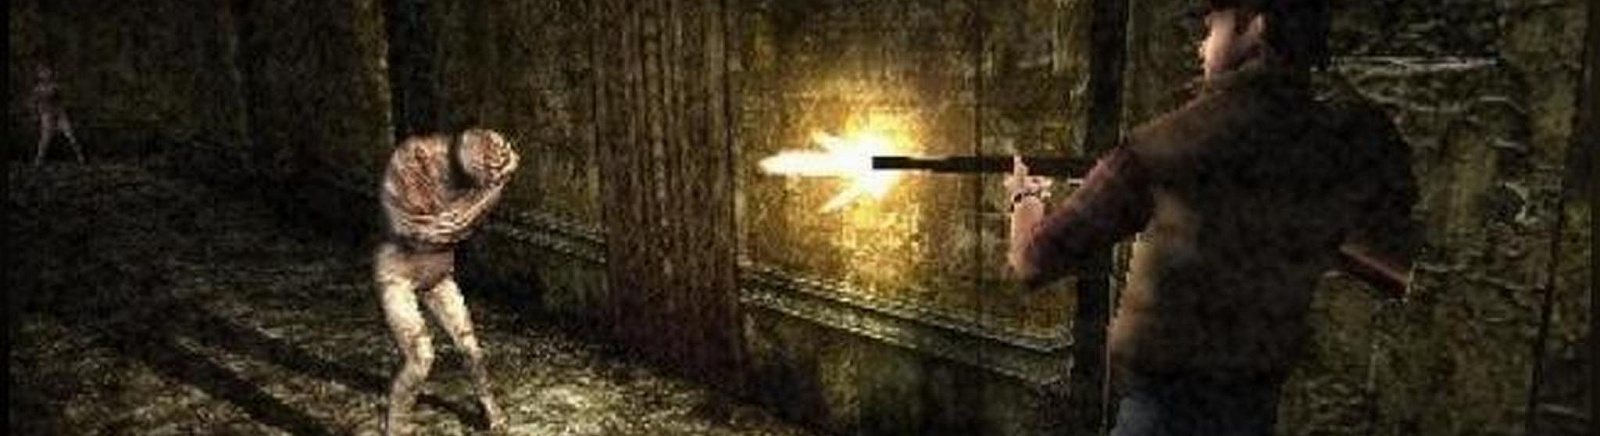 Дата выхода Silent Hill: 0rigins (Silent Hill Zer0)  на PS2 и PSP в России и во всем мире